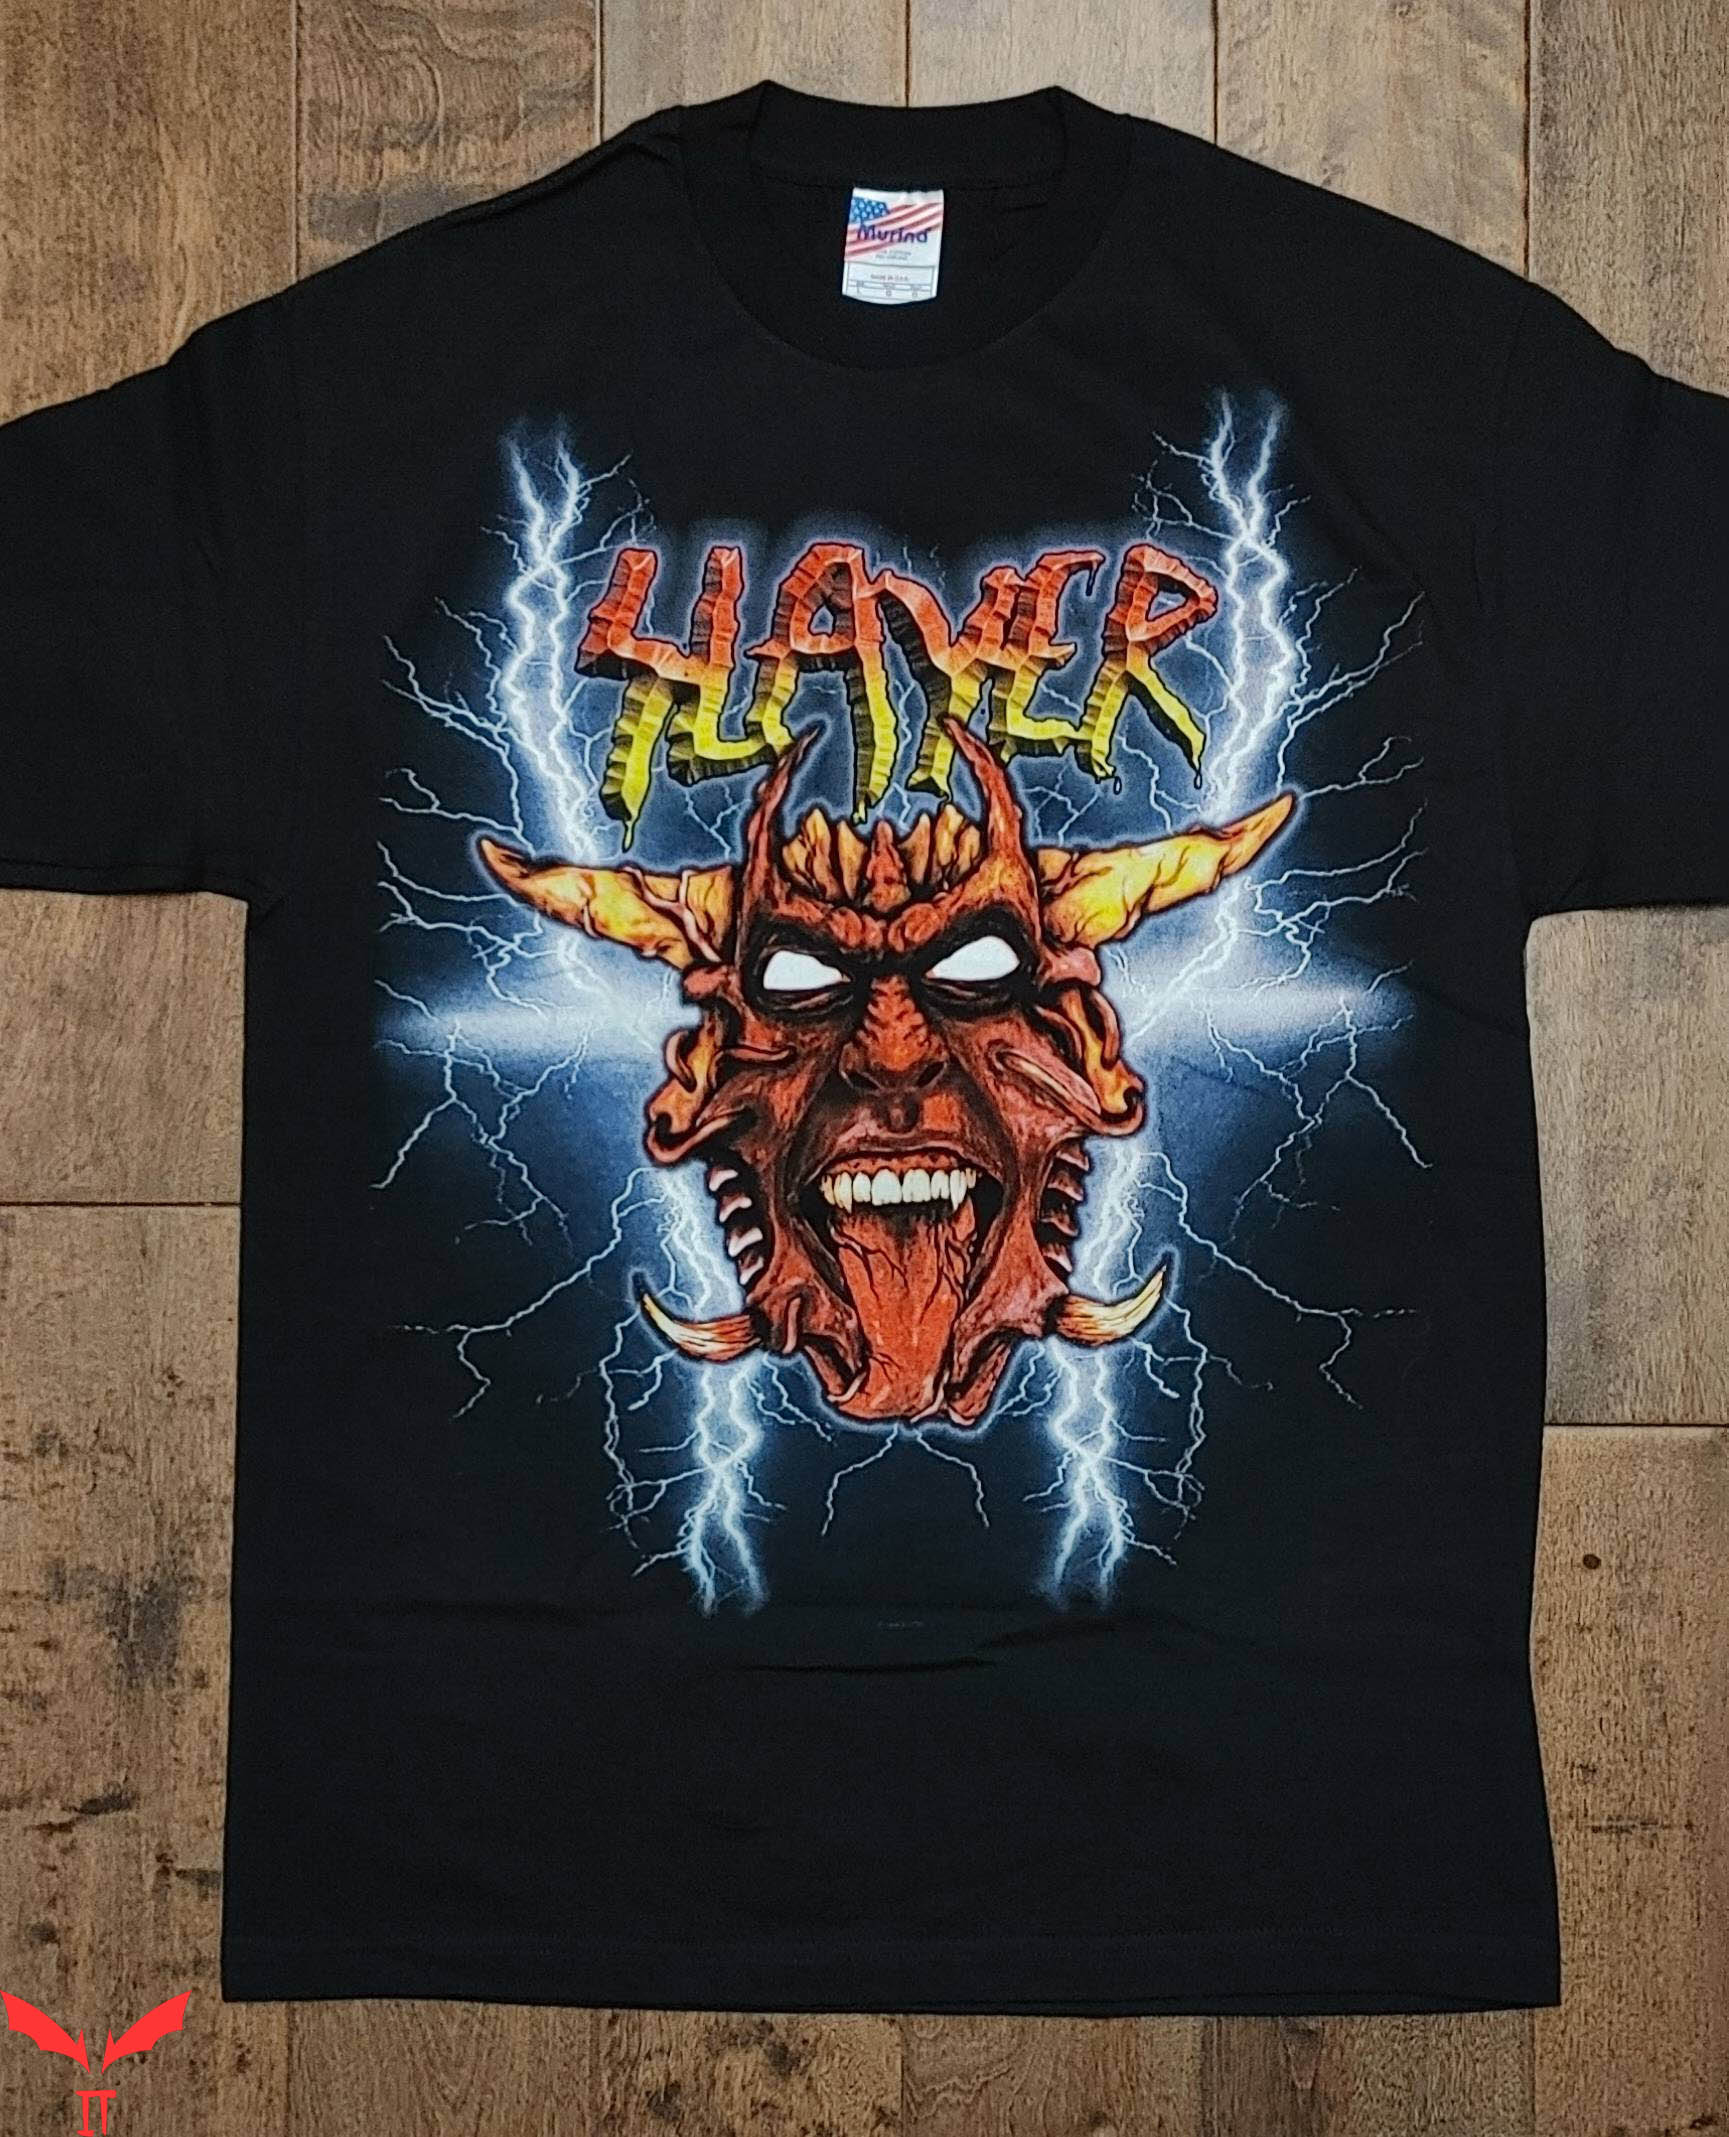 Slayer Vintage T-Shirt Slayer Diabolus In Musica Joker